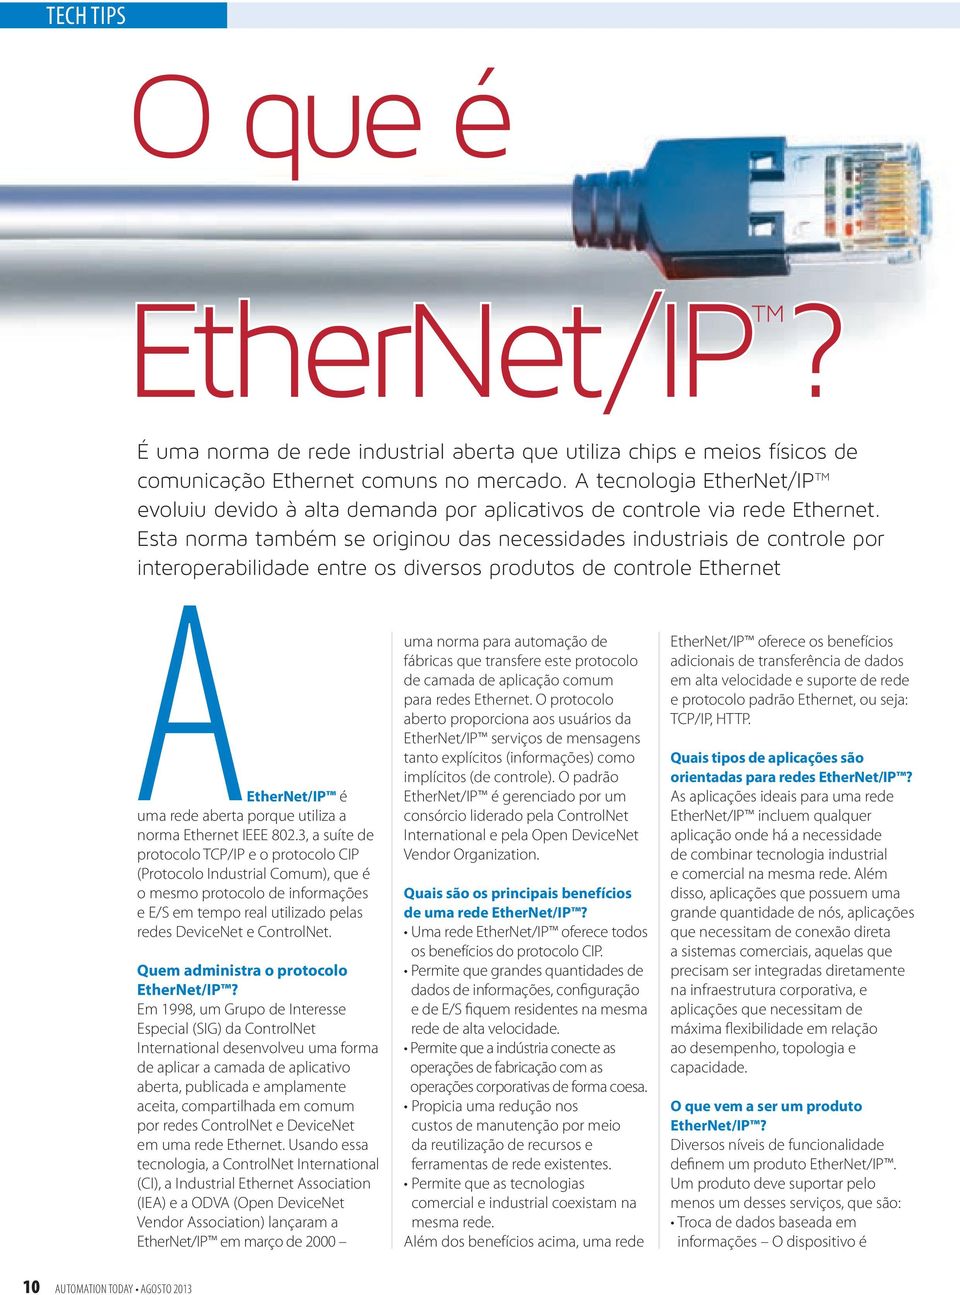 Esta norma também se originou das necessidades industriais de controle por interoperabilidade entre os diversos produtos de controle Ethernet A EtherNet/IP é uma rede aberta porque utiliza a norma